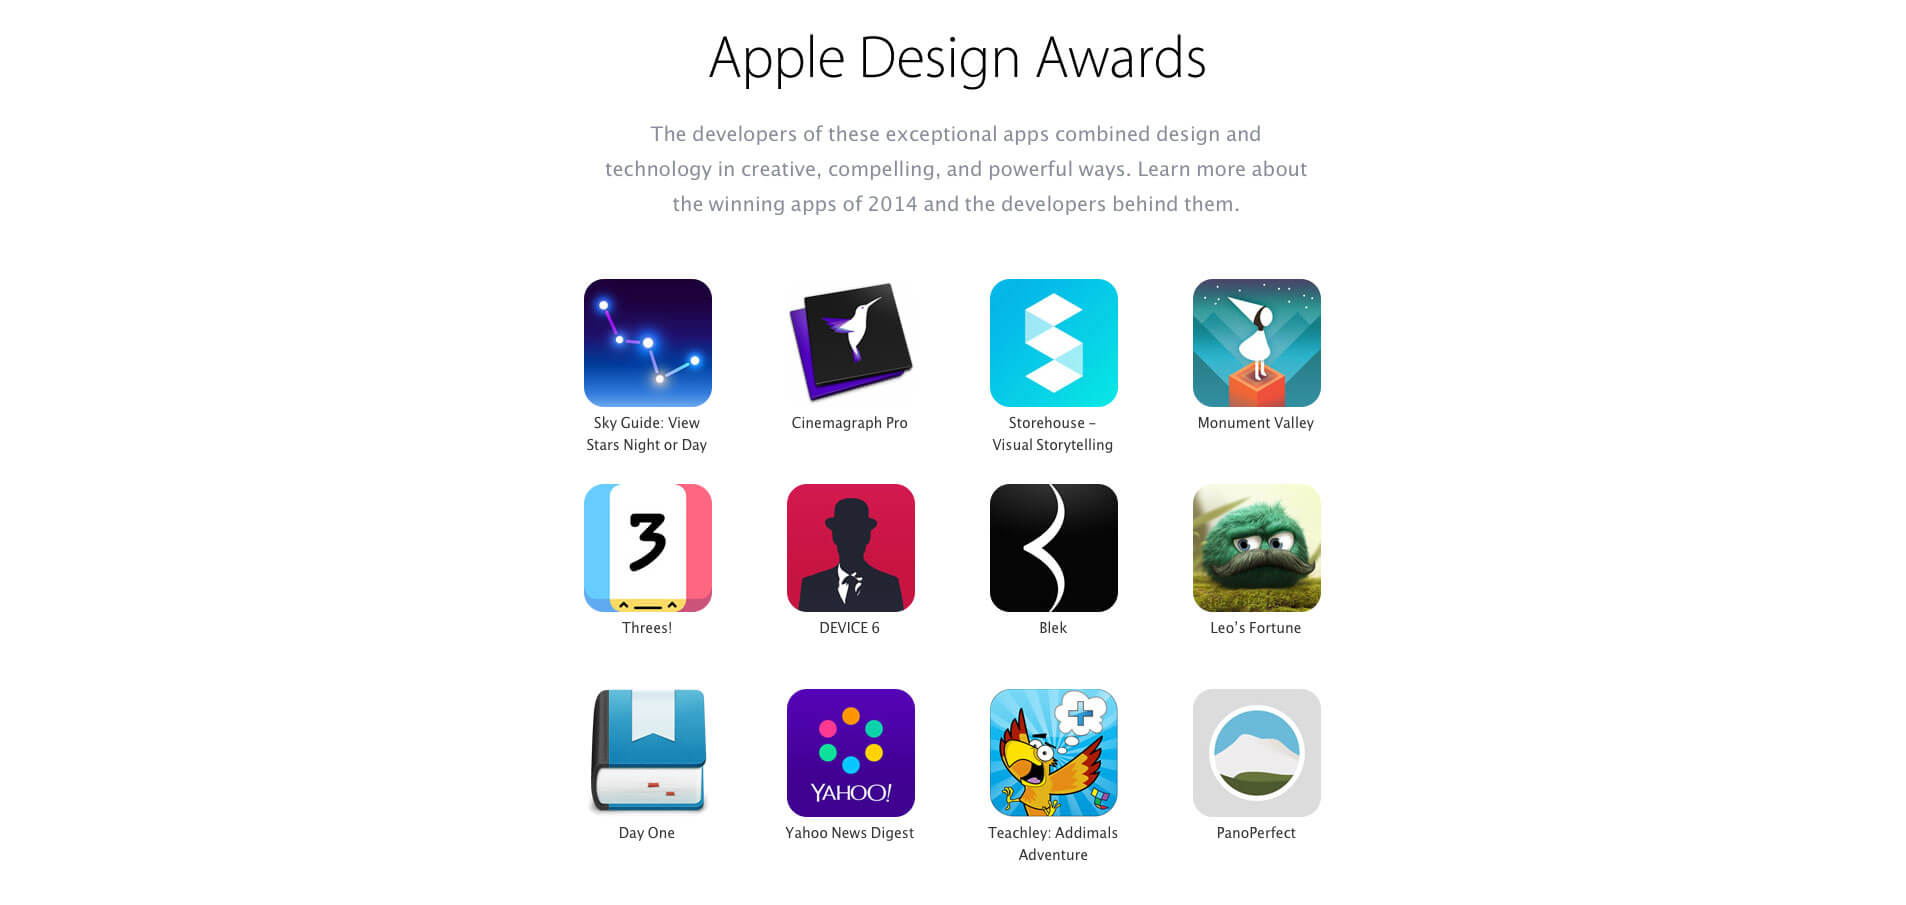 The 12 Design Award winners for 2014